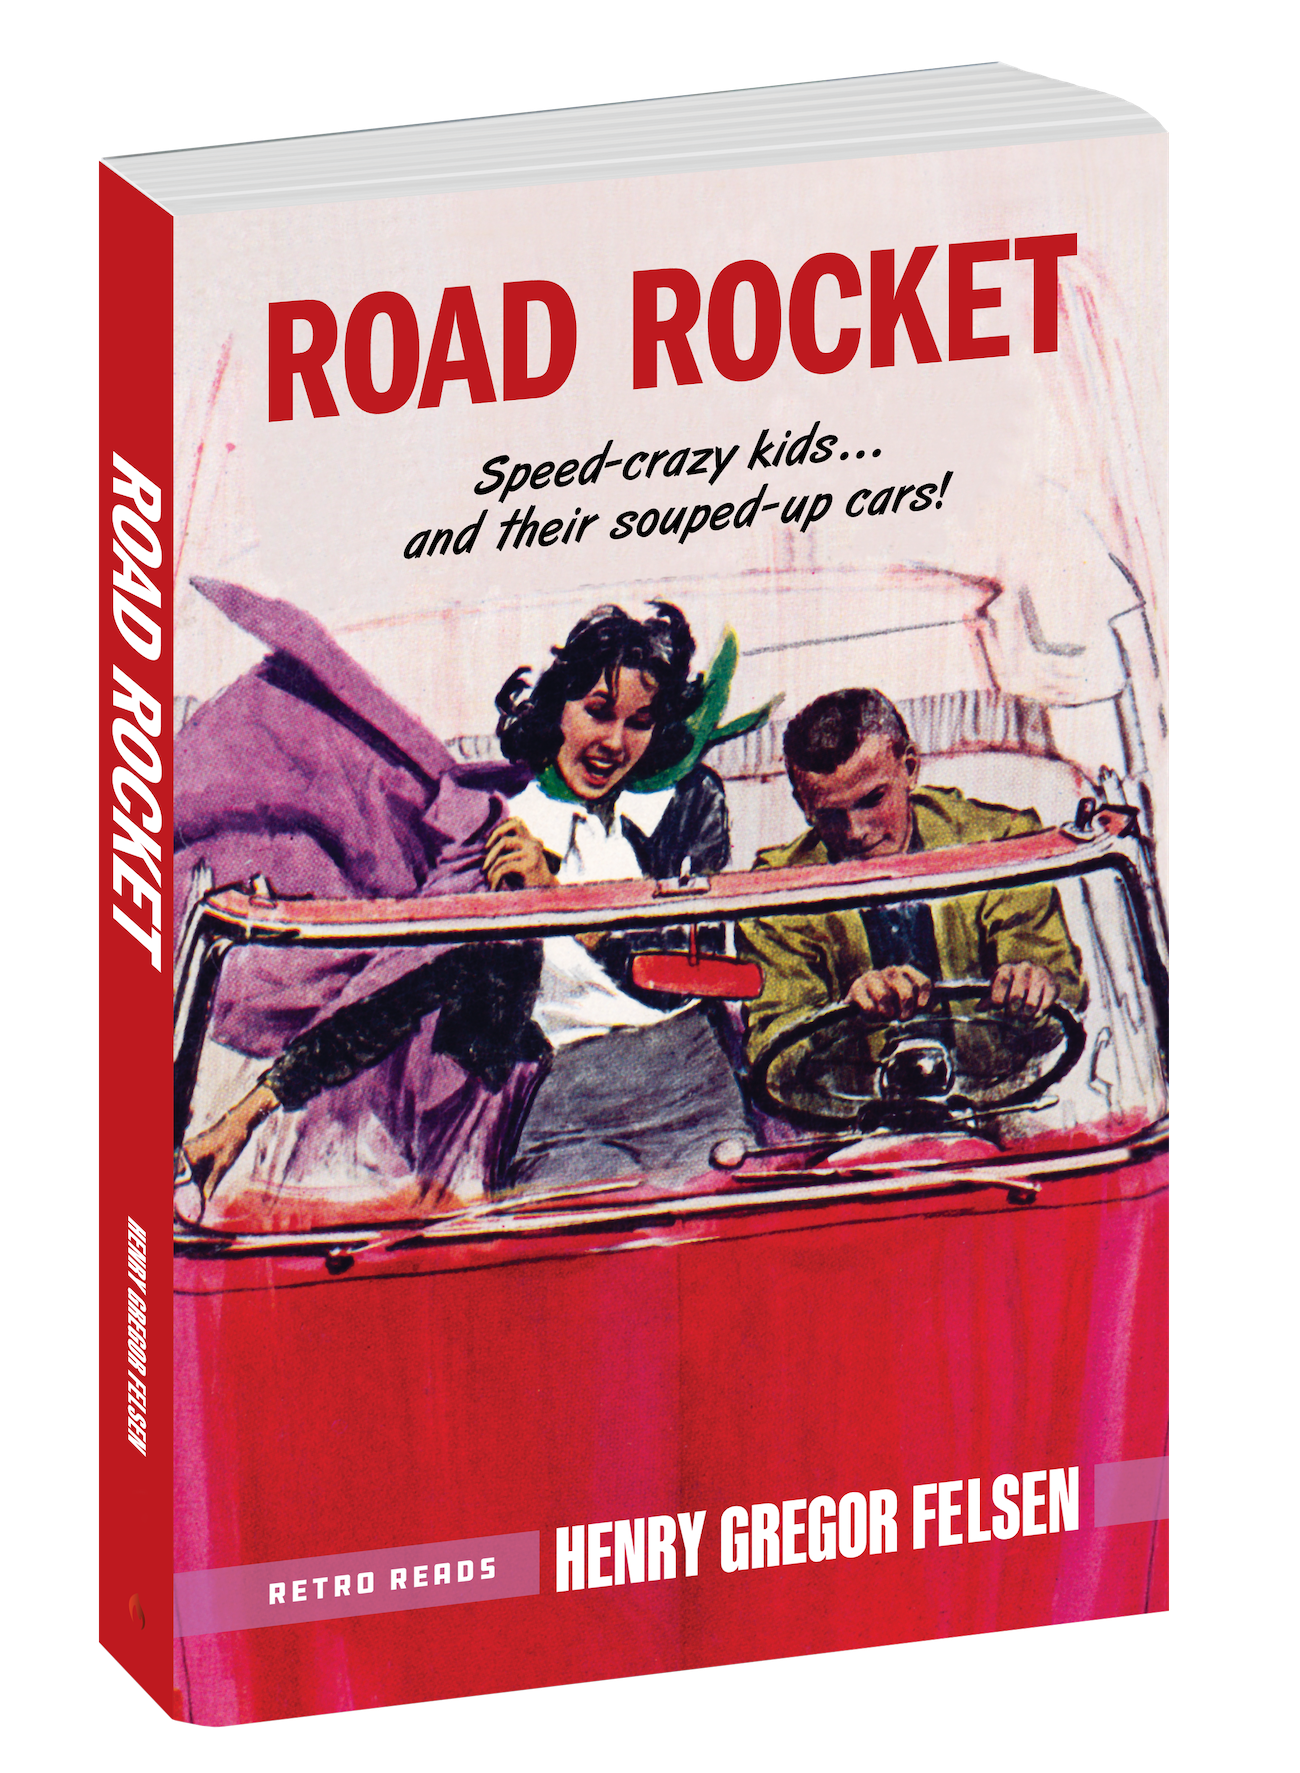 Road Rocket 3-D Book Cover